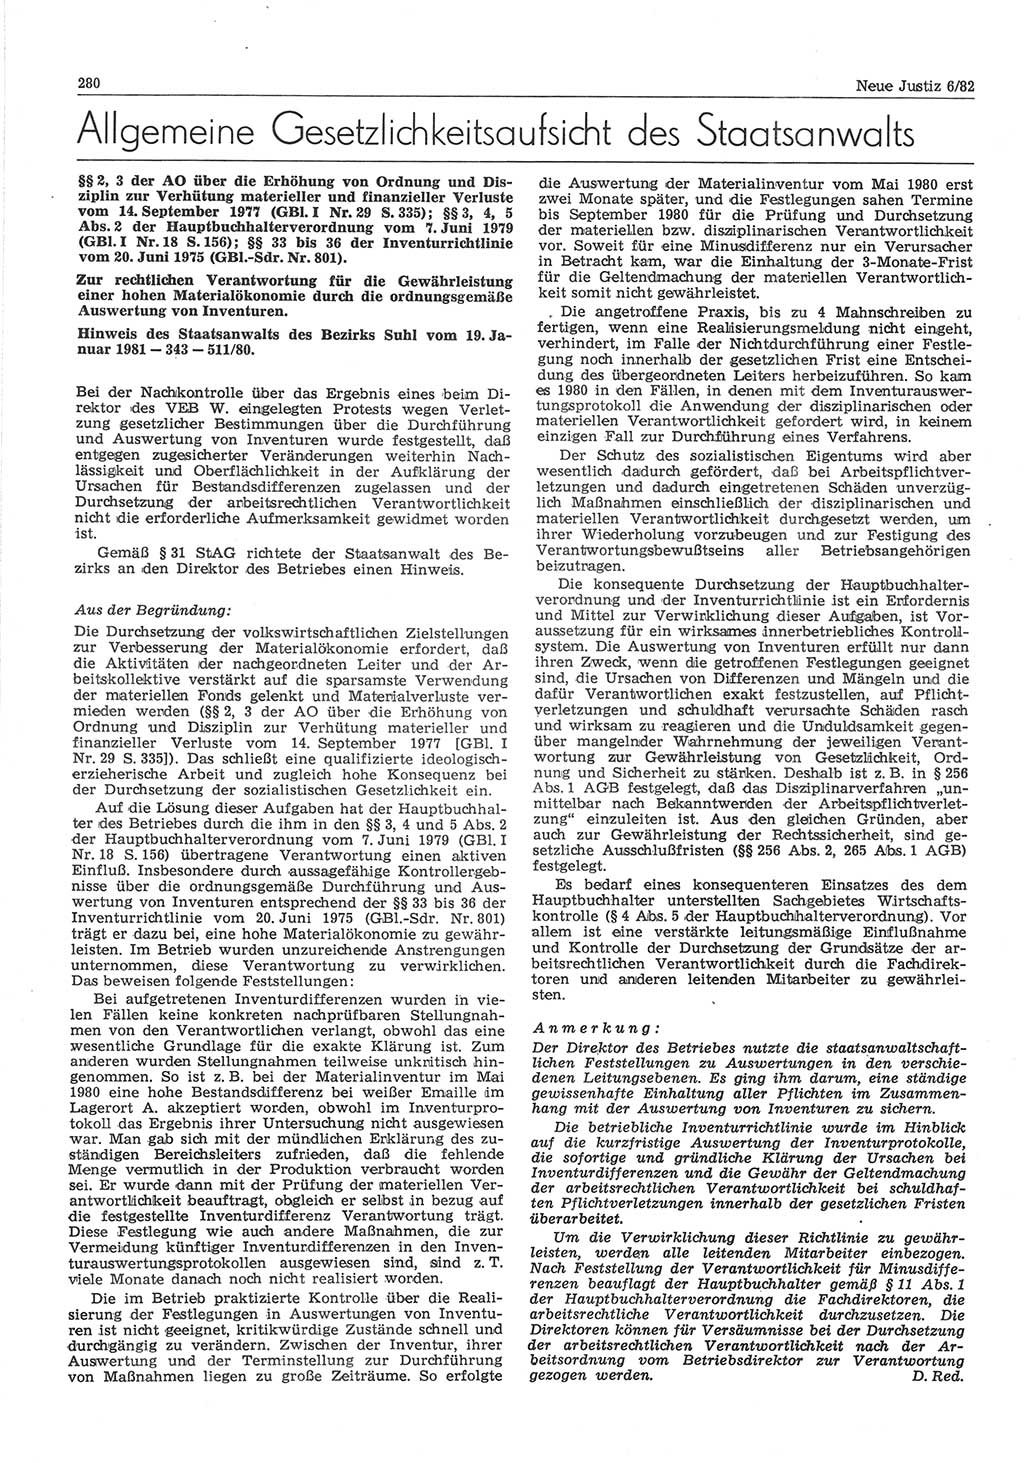 Neue Justiz (NJ), Zeitschrift für sozialistisches Recht und Gesetzlichkeit [Deutsche Demokratische Republik (DDR)], 36. Jahrgang 1982, Seite 280 (NJ DDR 1982, S. 280)